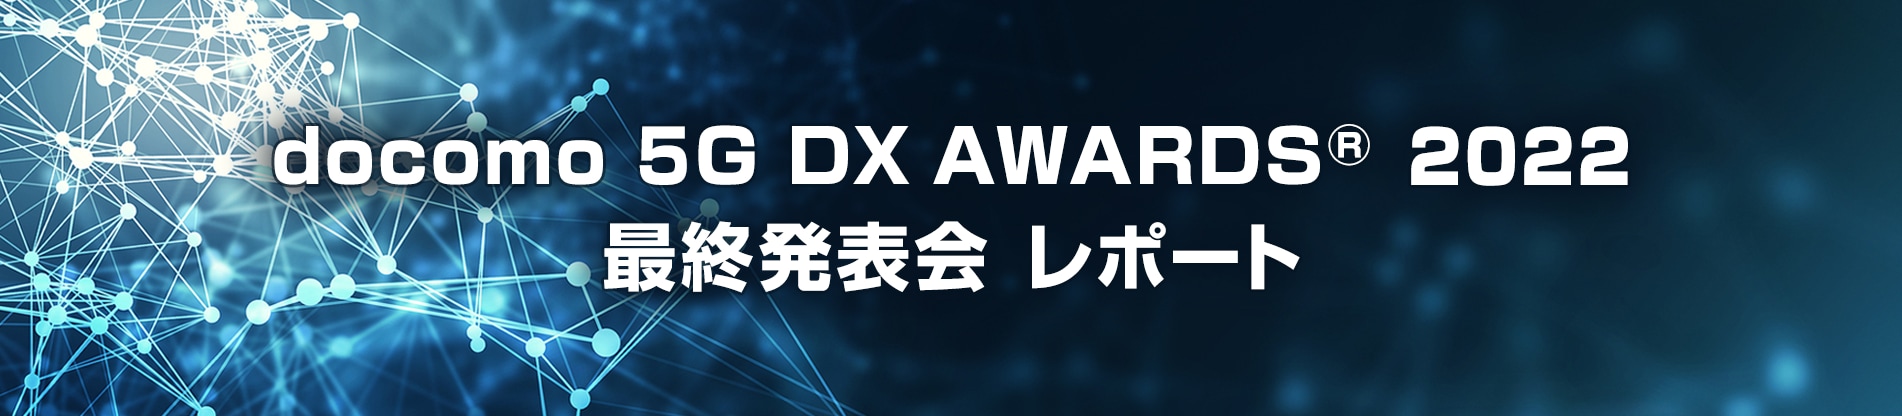 docomo 5G DX AWARDS 2022 最終発表会レポート